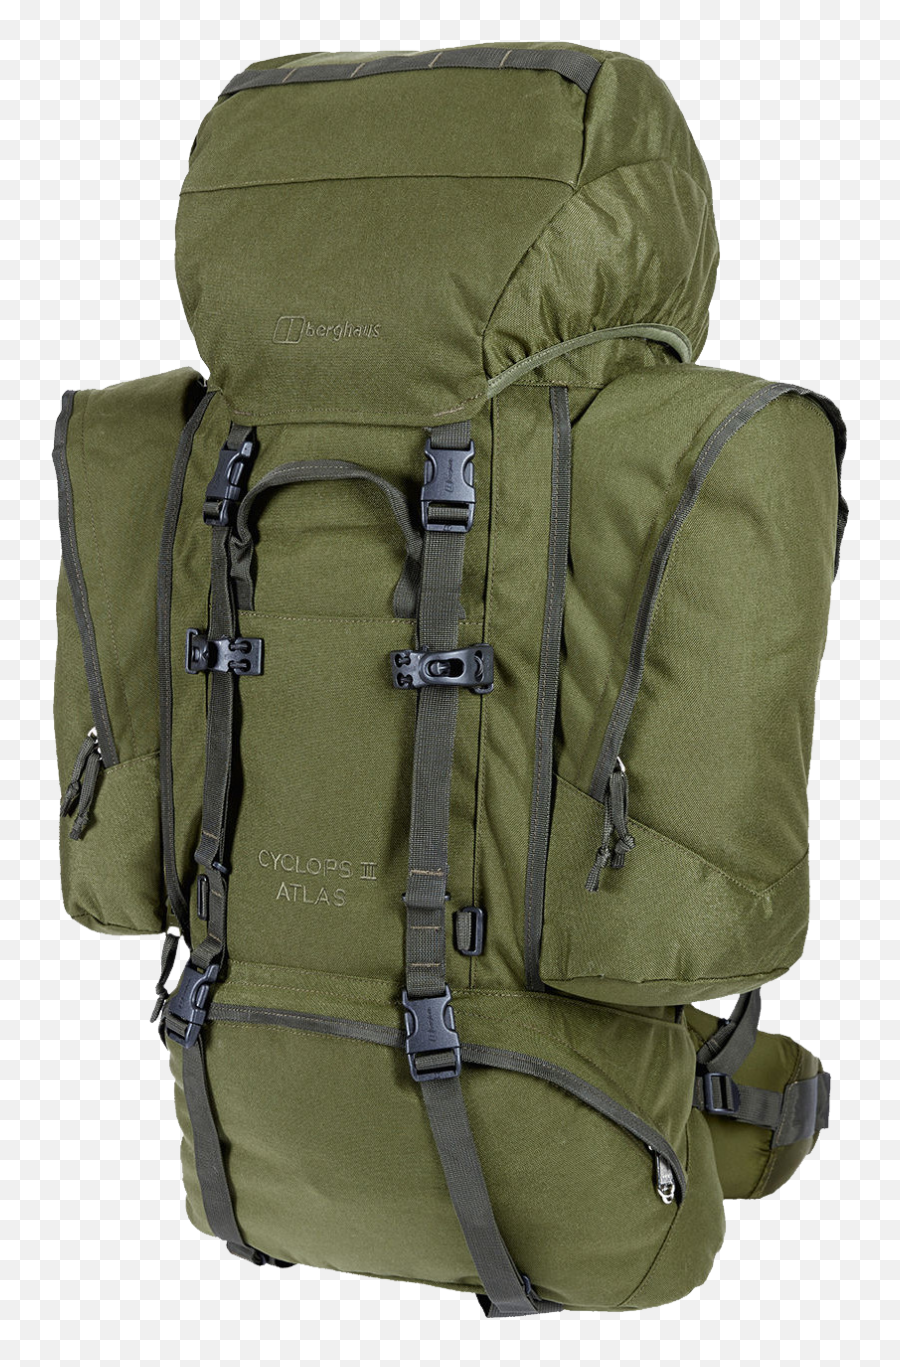 Png Transparent Backpack - Hiking Backpack Png,Backpack Transparent Background